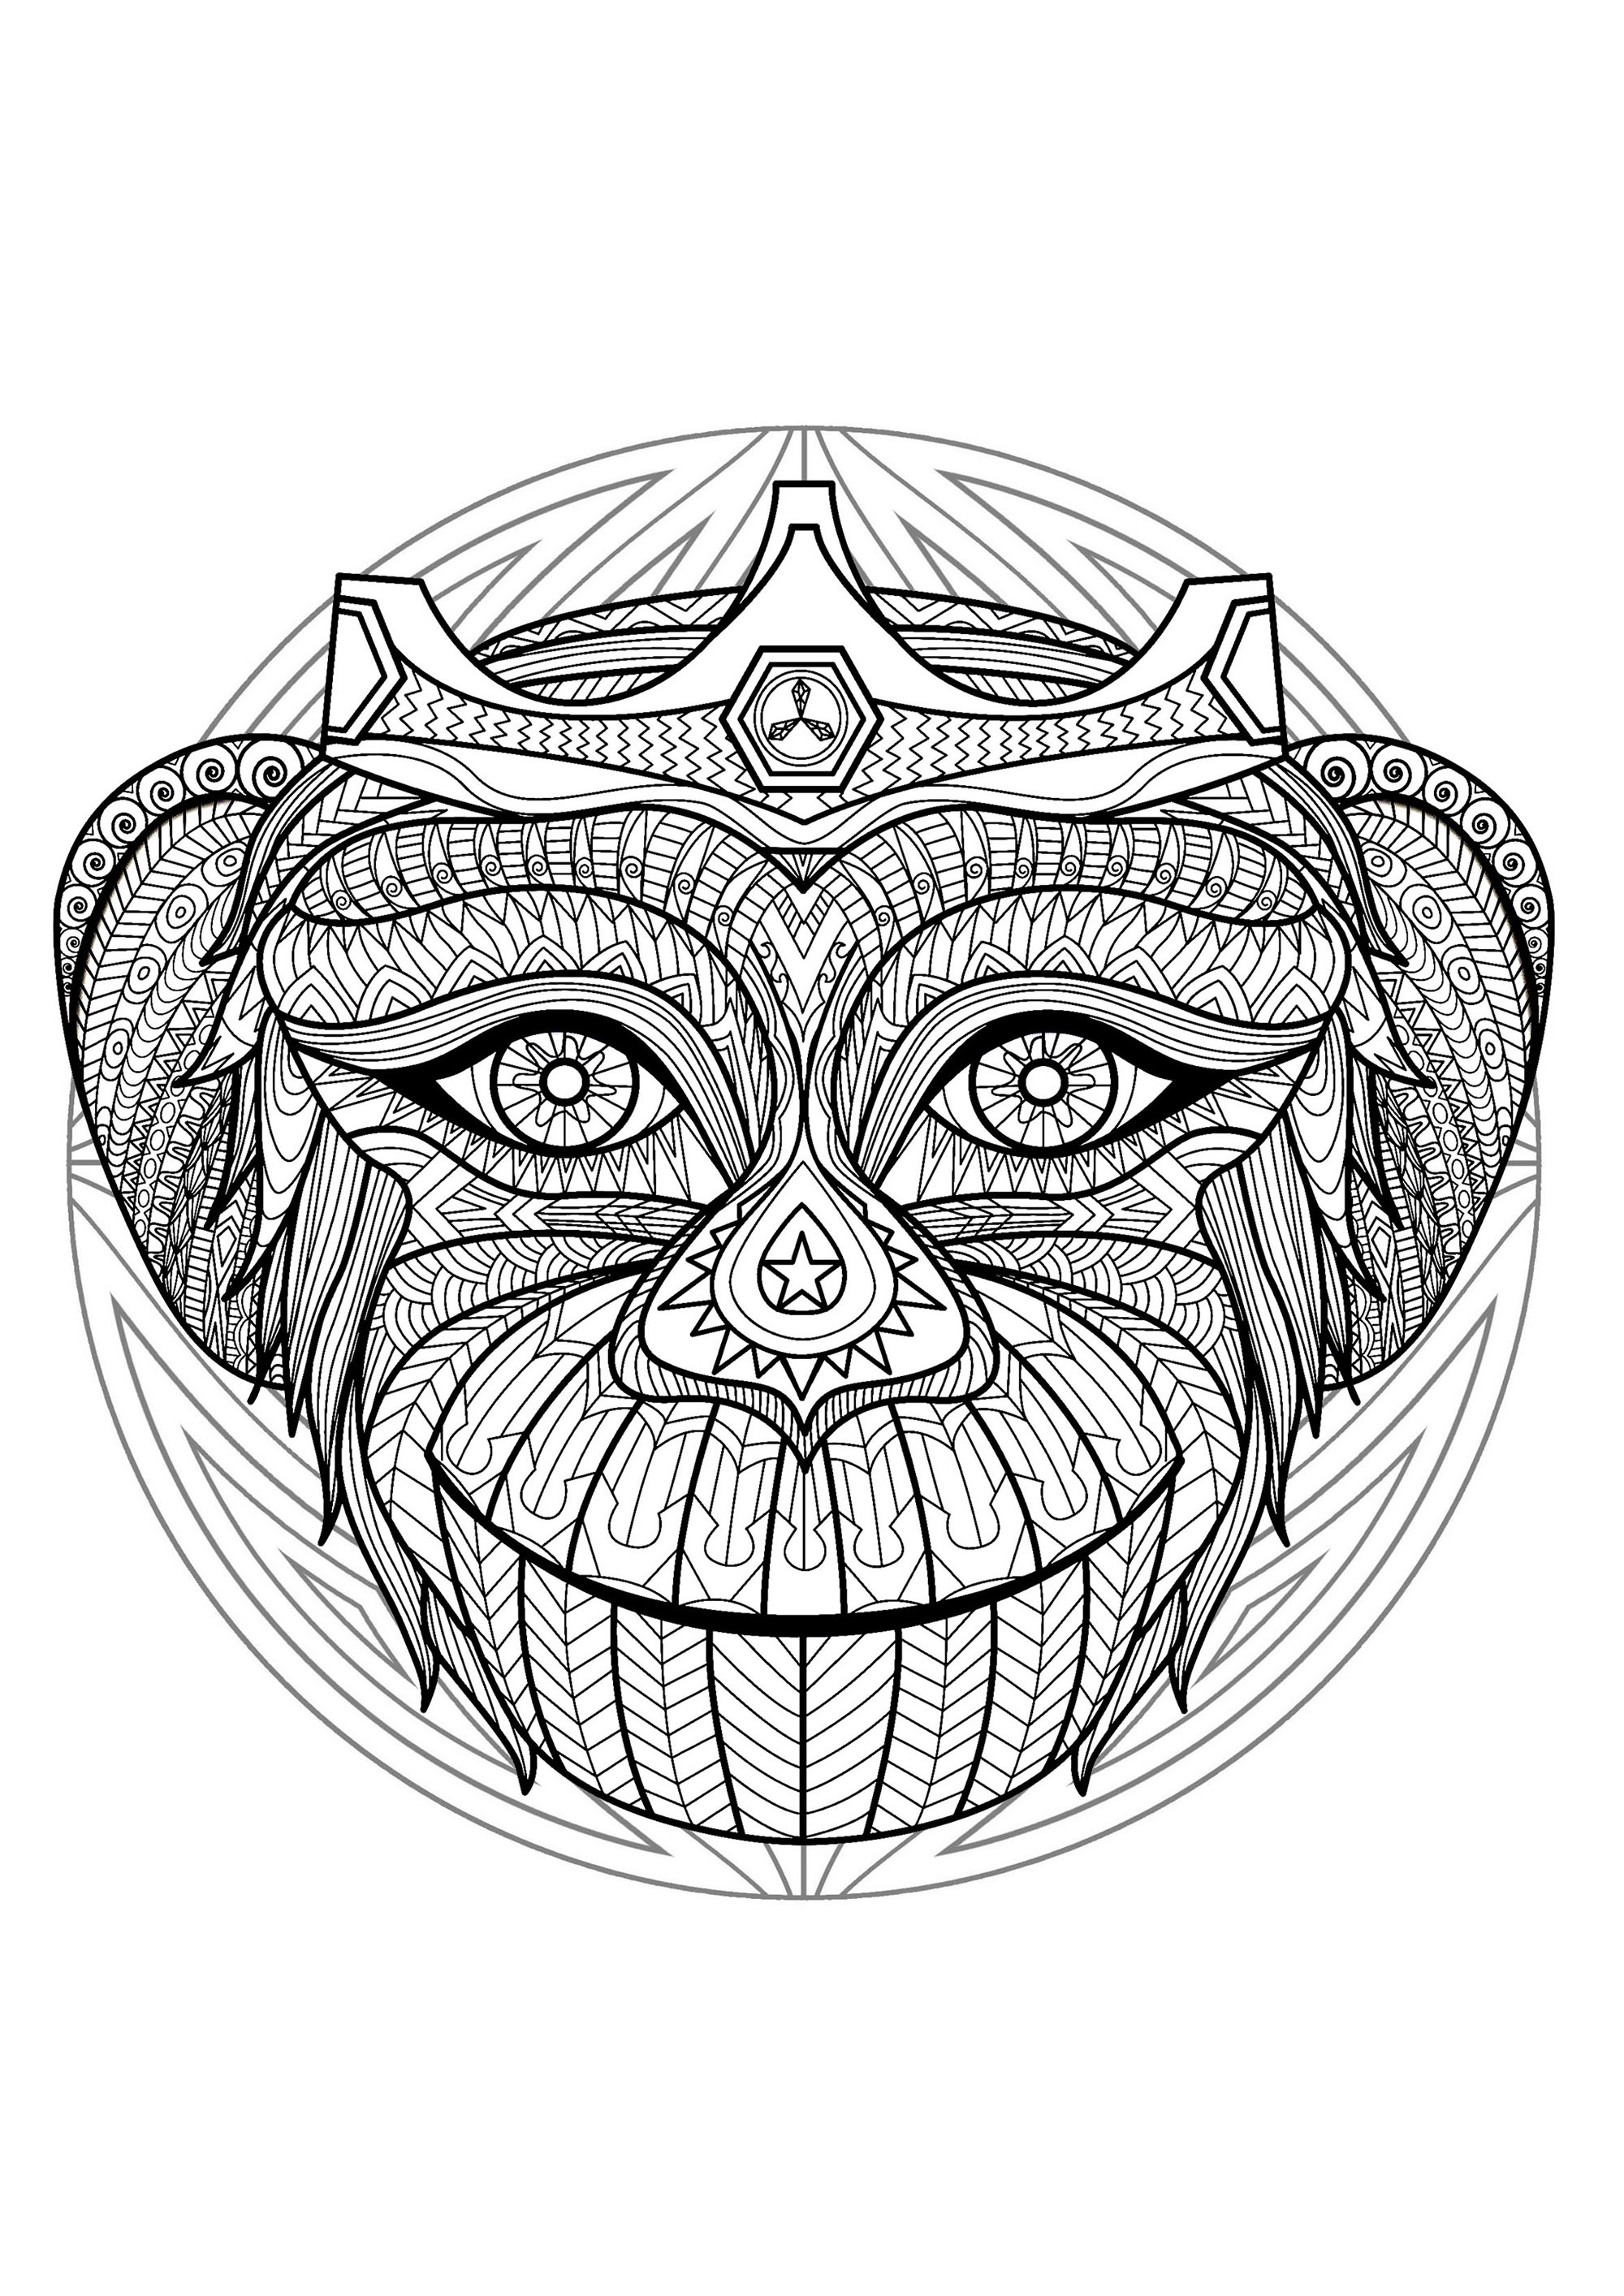 Desenho de Cabeça de macaco para colorir